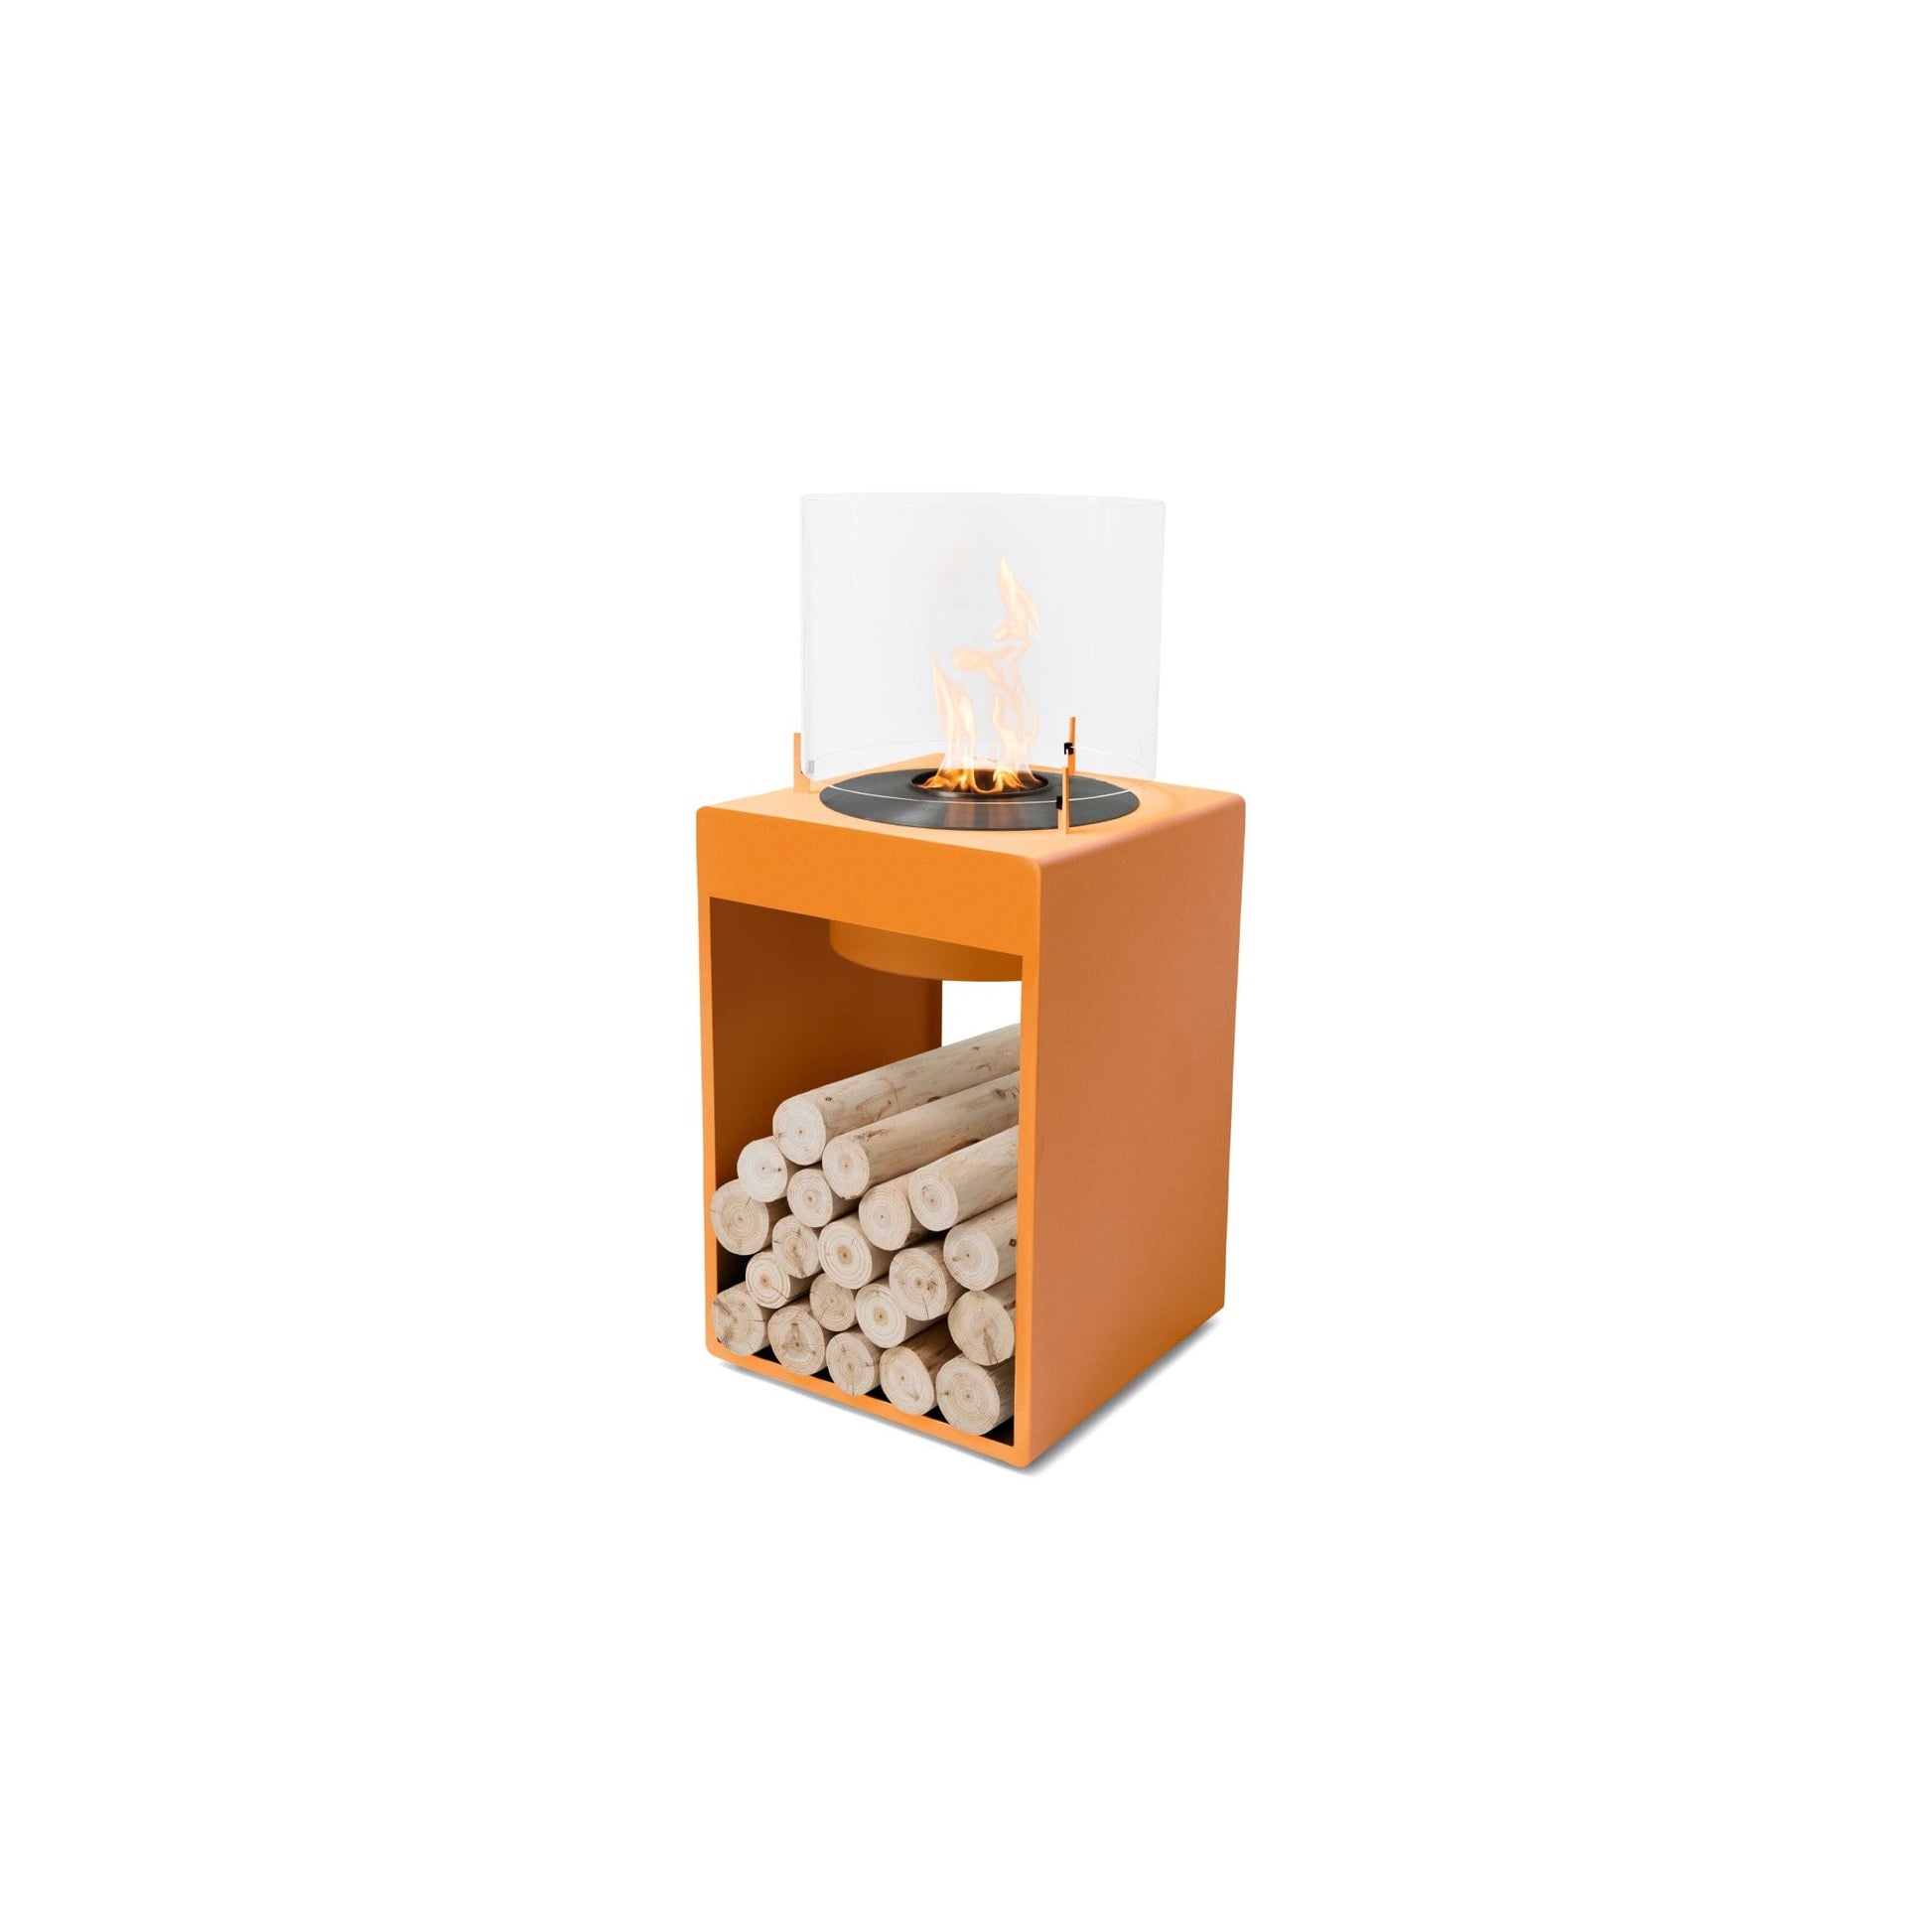 EcoSmart Fire POP 8T 39" Orange Freestanding Designer Fireplace with Black Burner by MAD Design Group